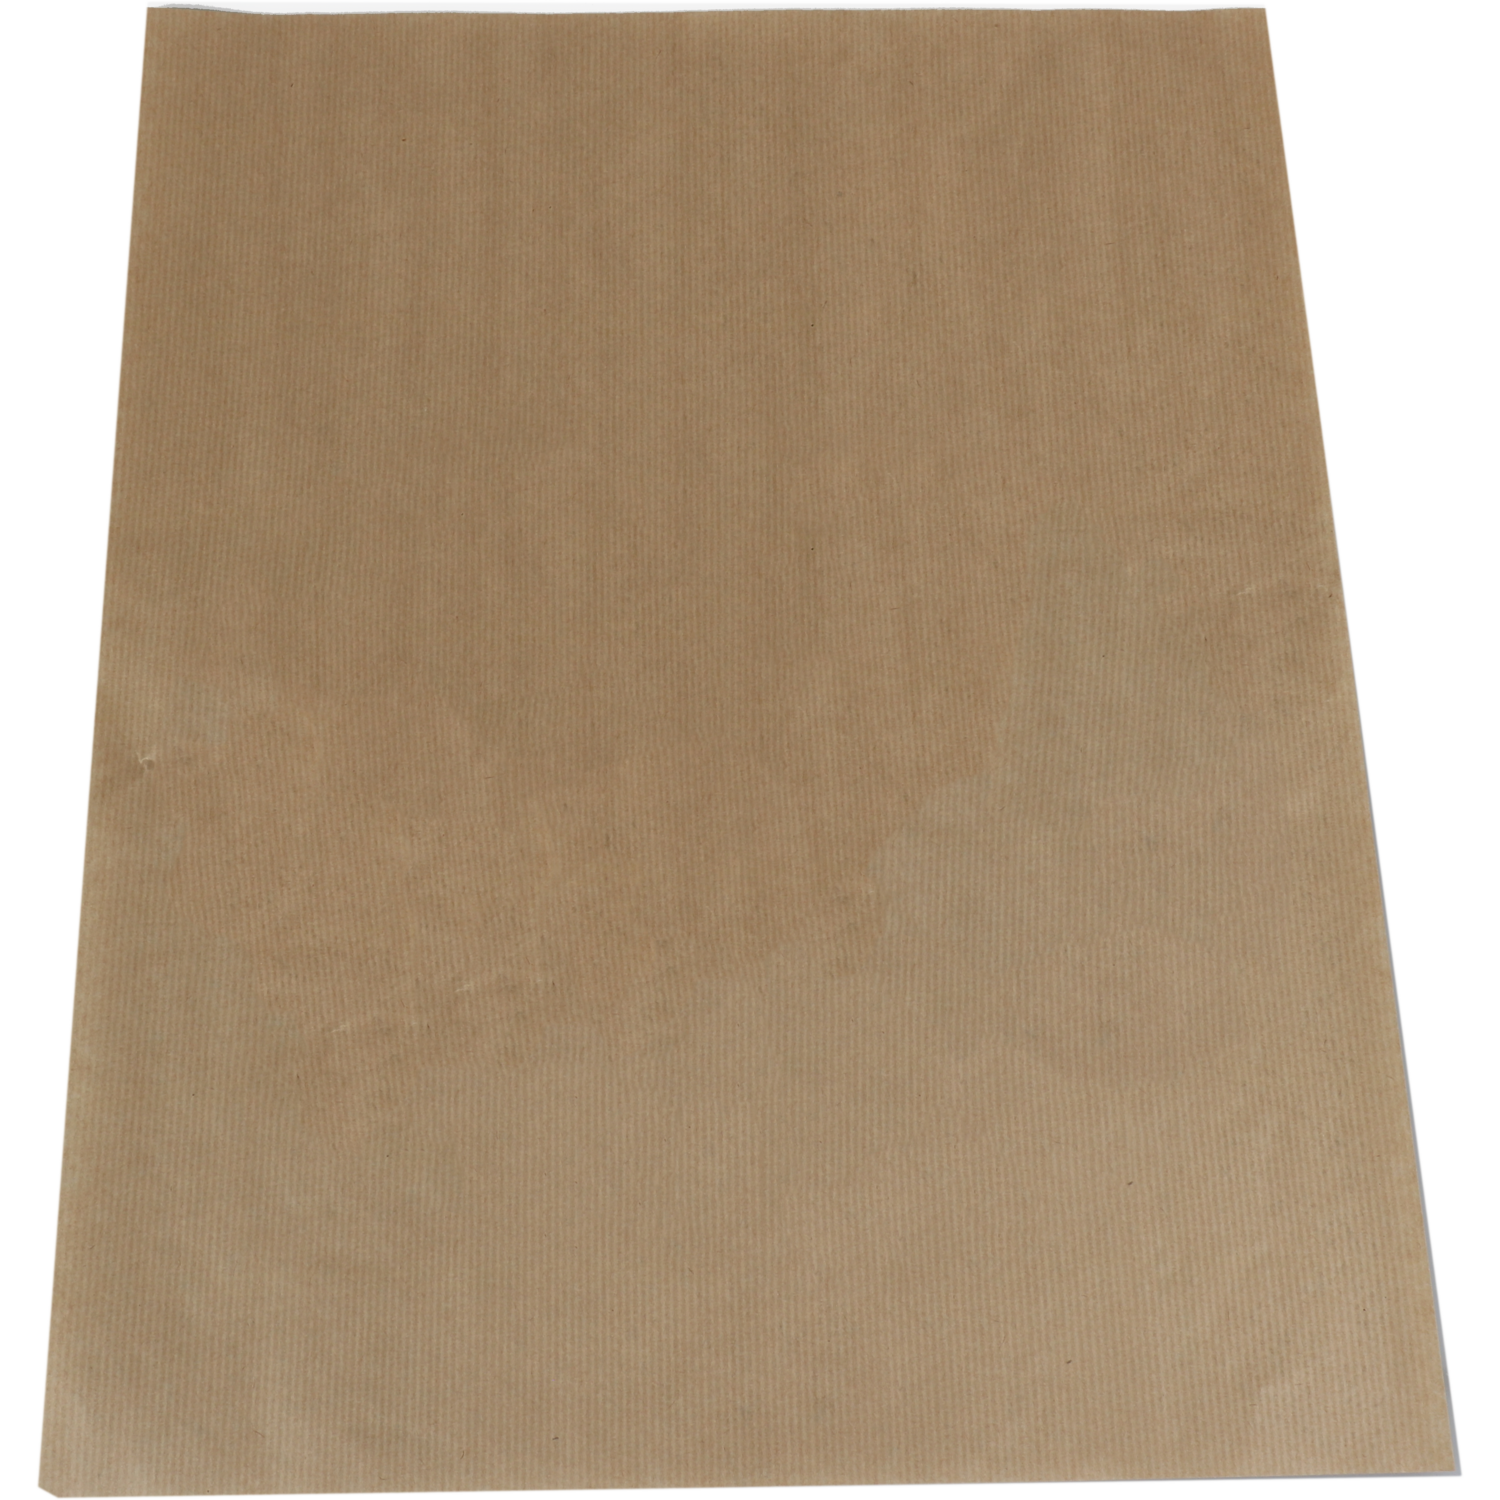 Paper, Edelpack paper, 48x40cm, brown  1